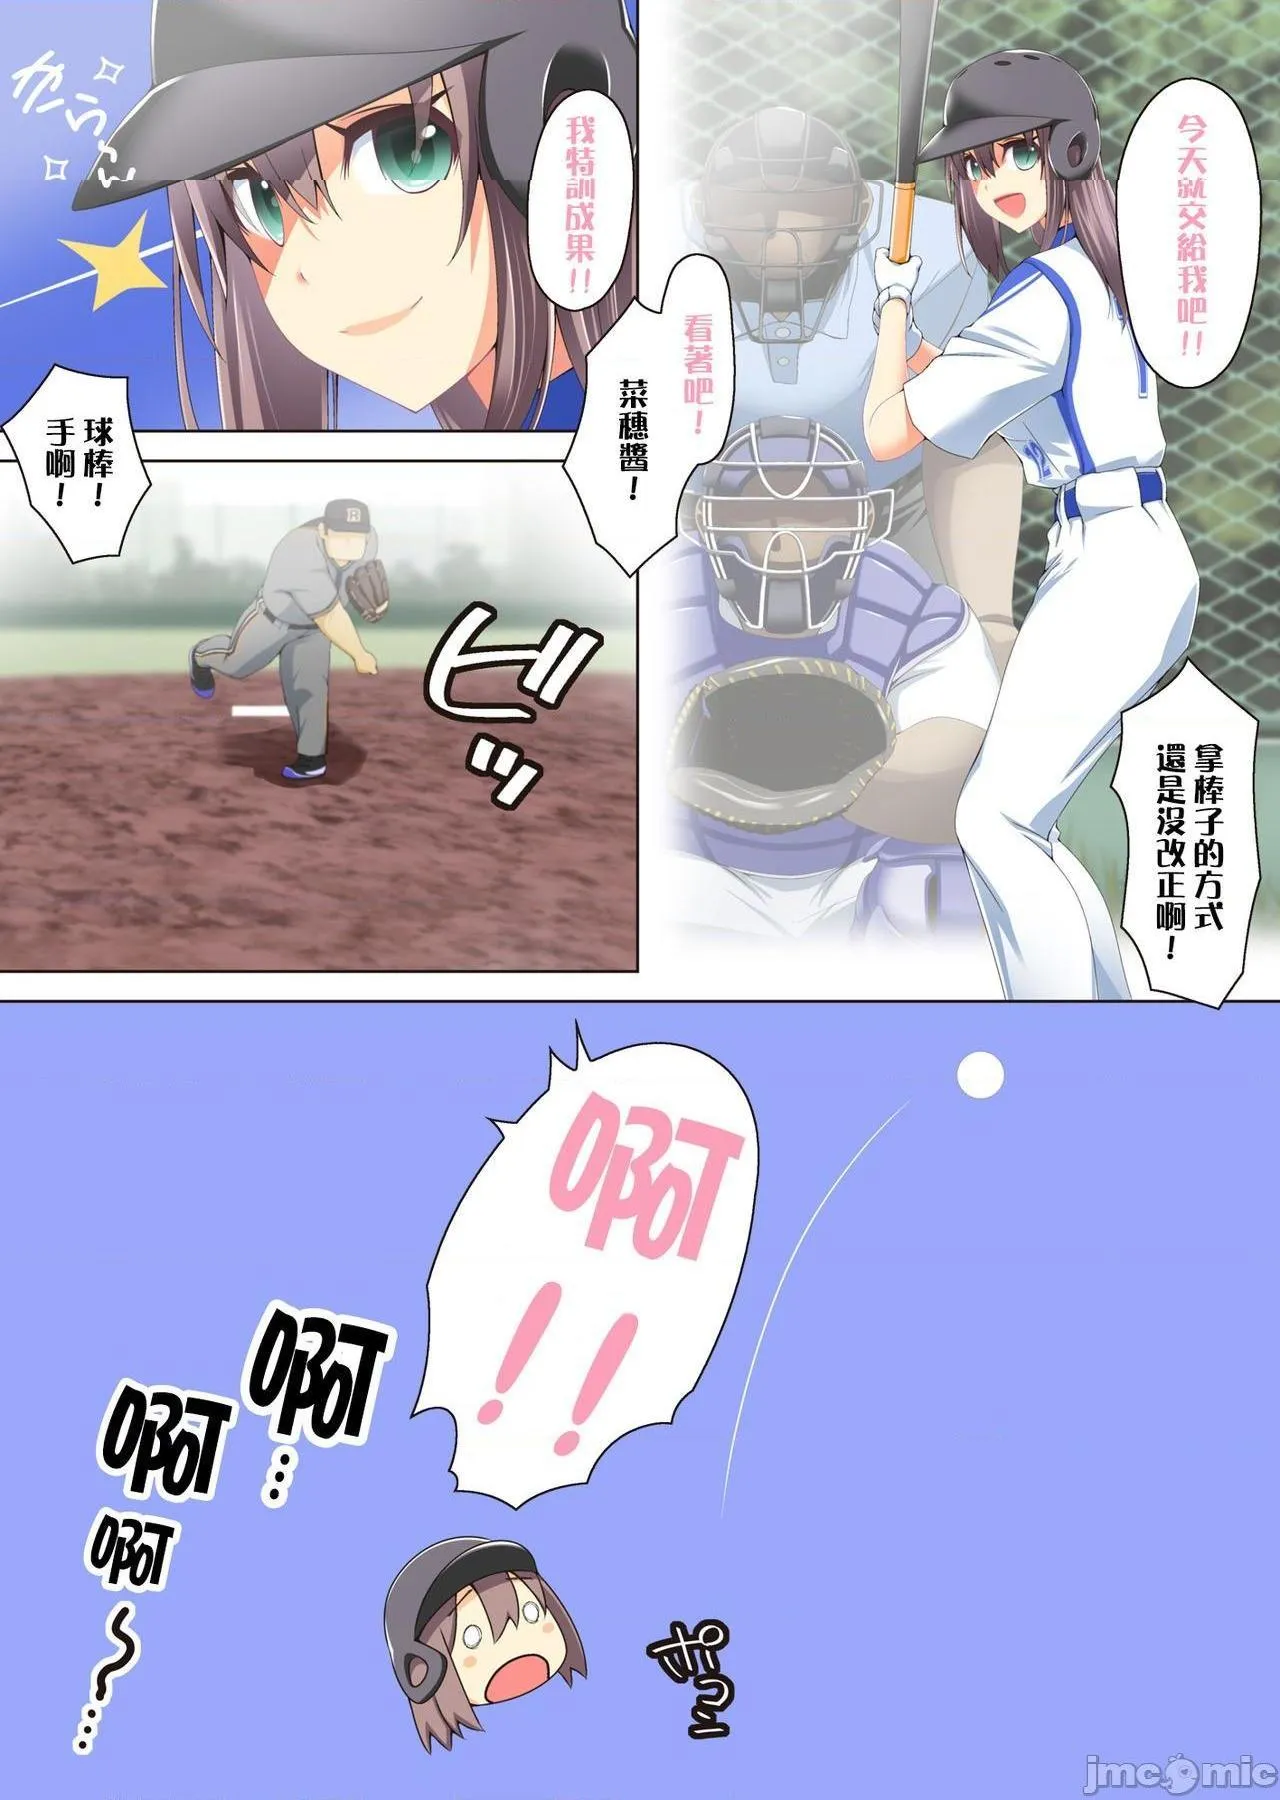 日本全彩漫画之小さいユニフォームで草野球の练习のはずがエッチなことしてて、